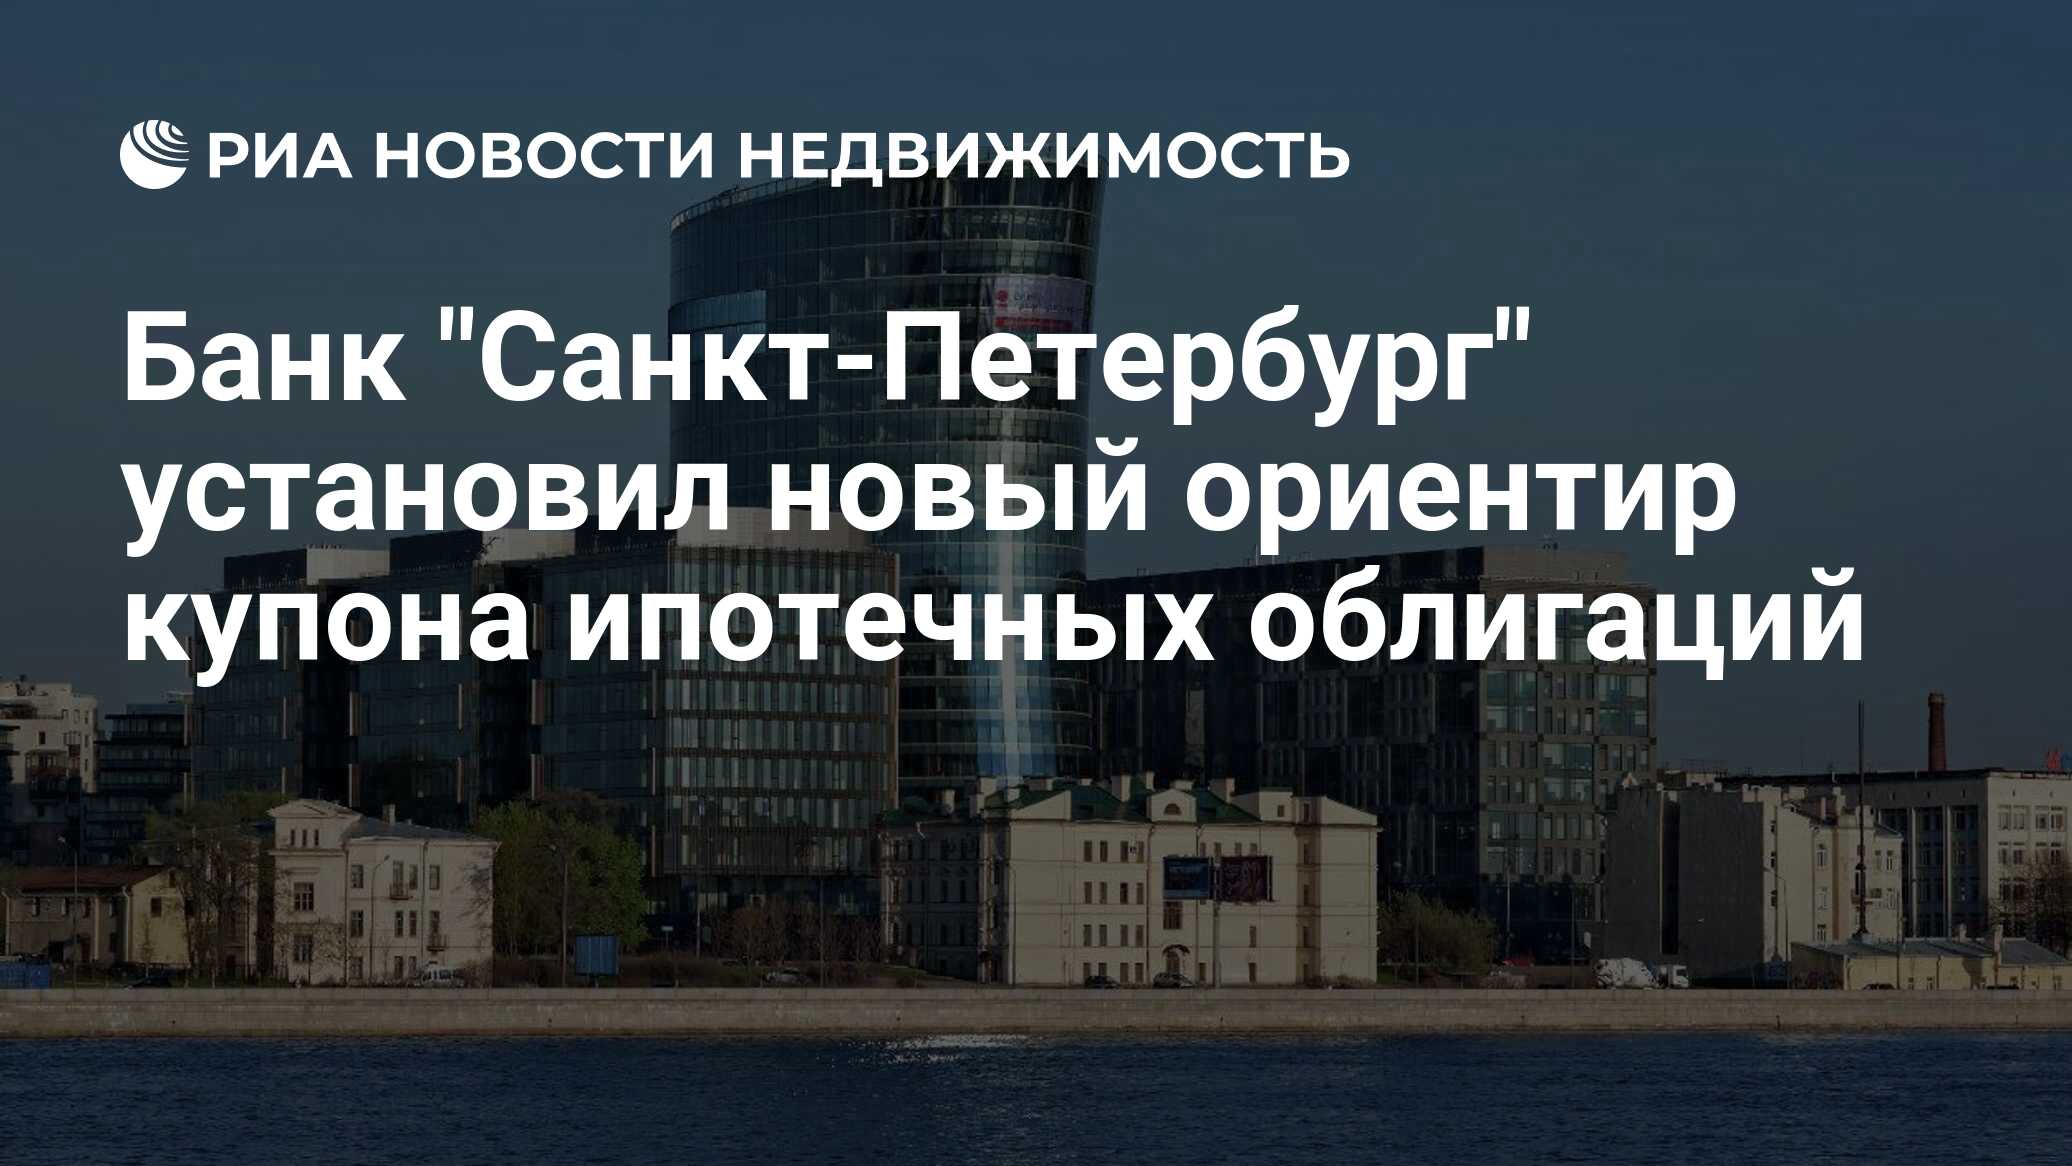 Ипотечные банки санкт петербурга. Новый ориентир.